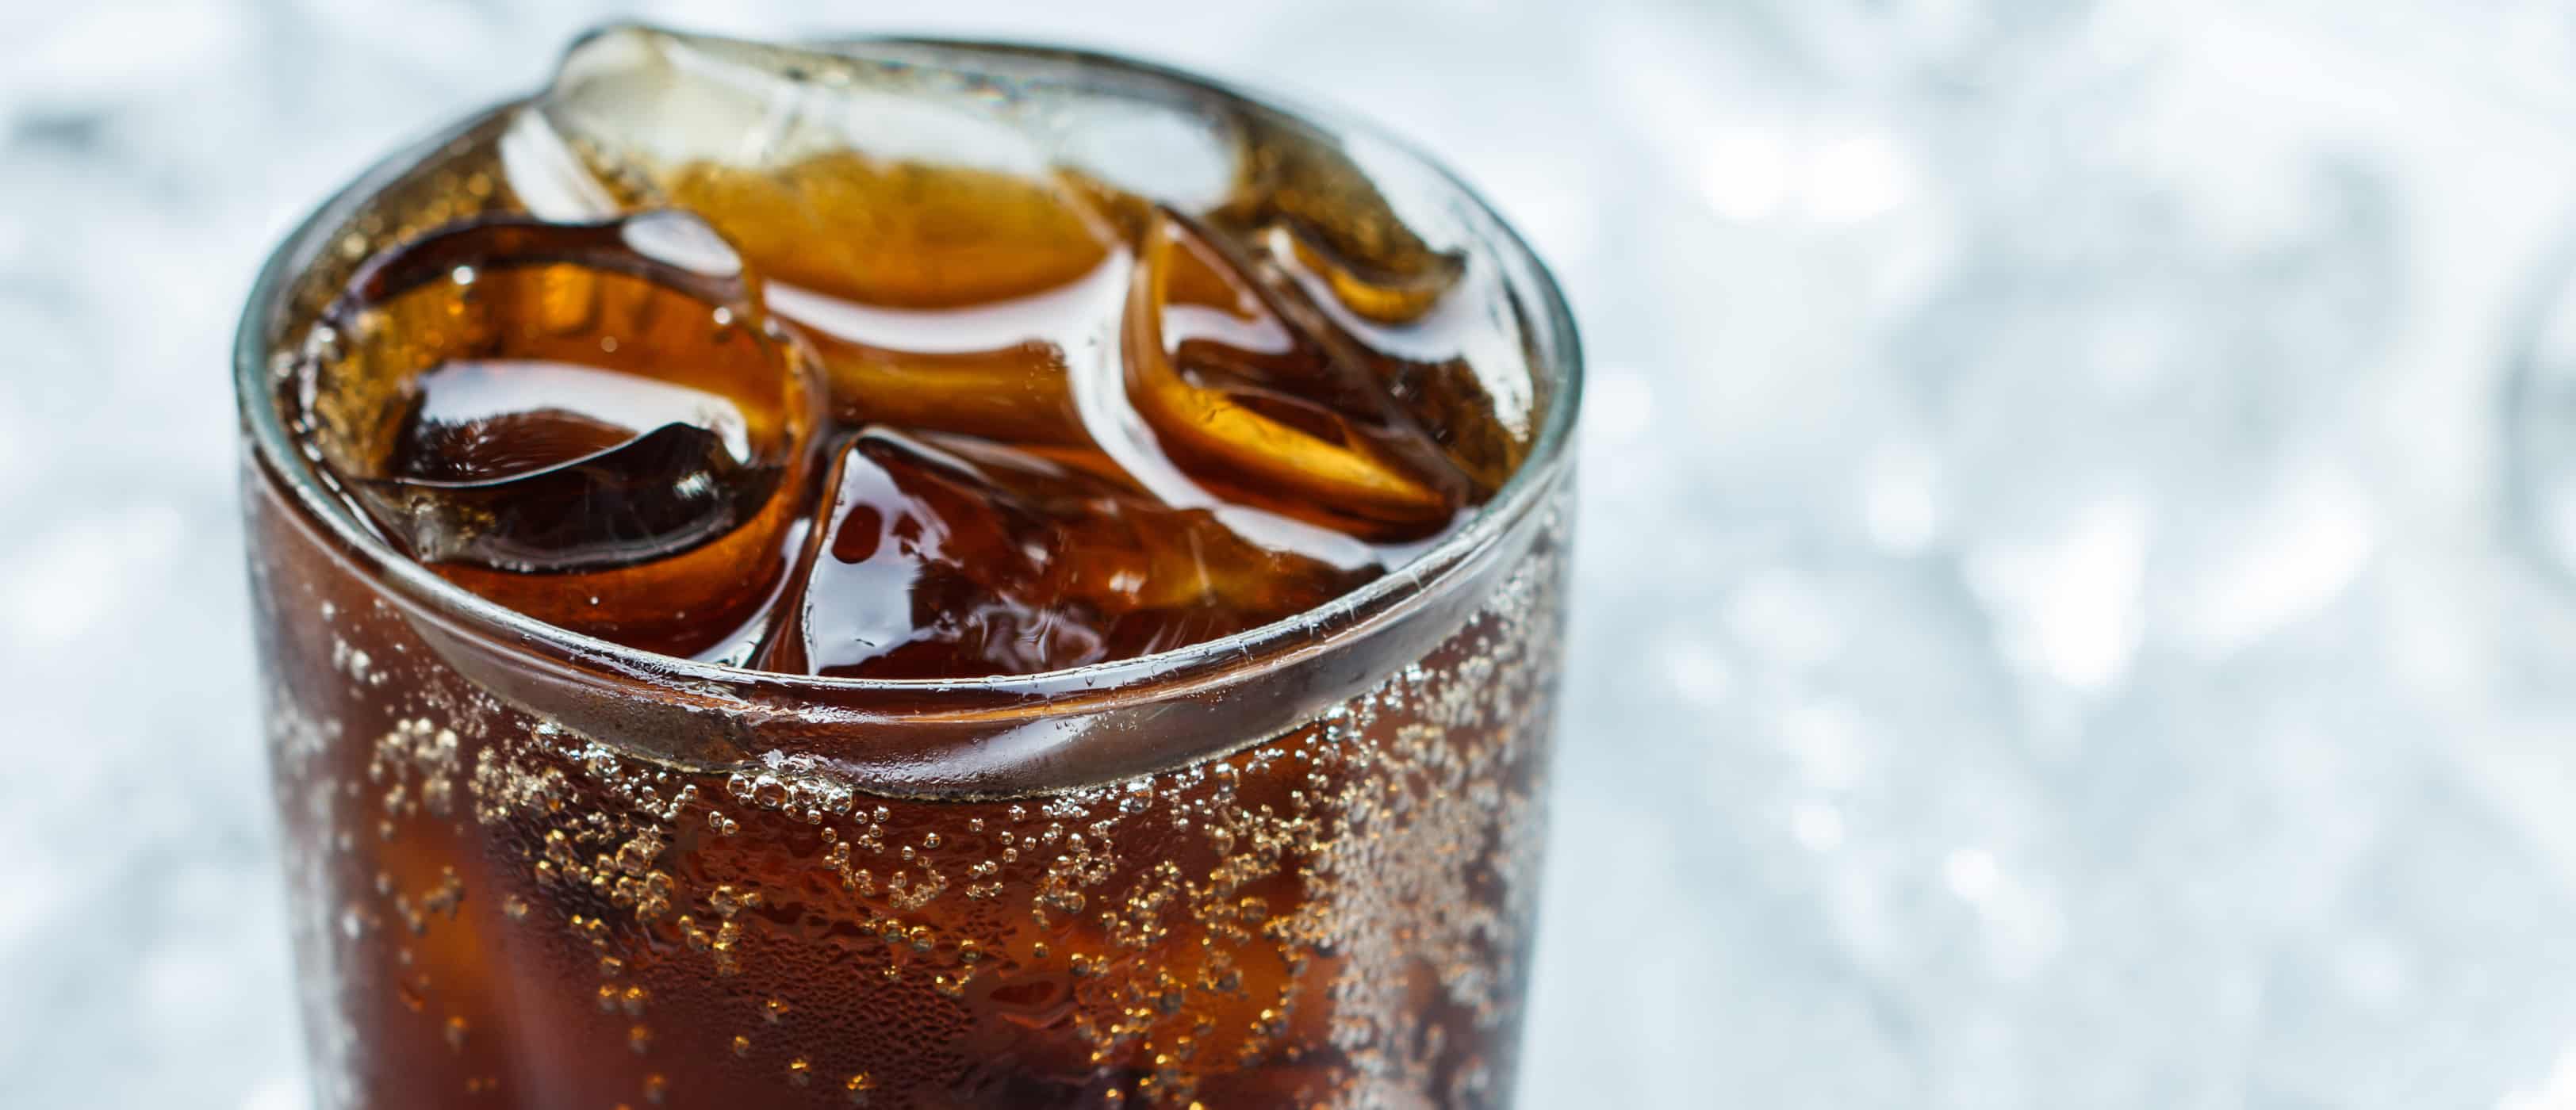 myten om faren for kunstigt sødemiddel aspartam